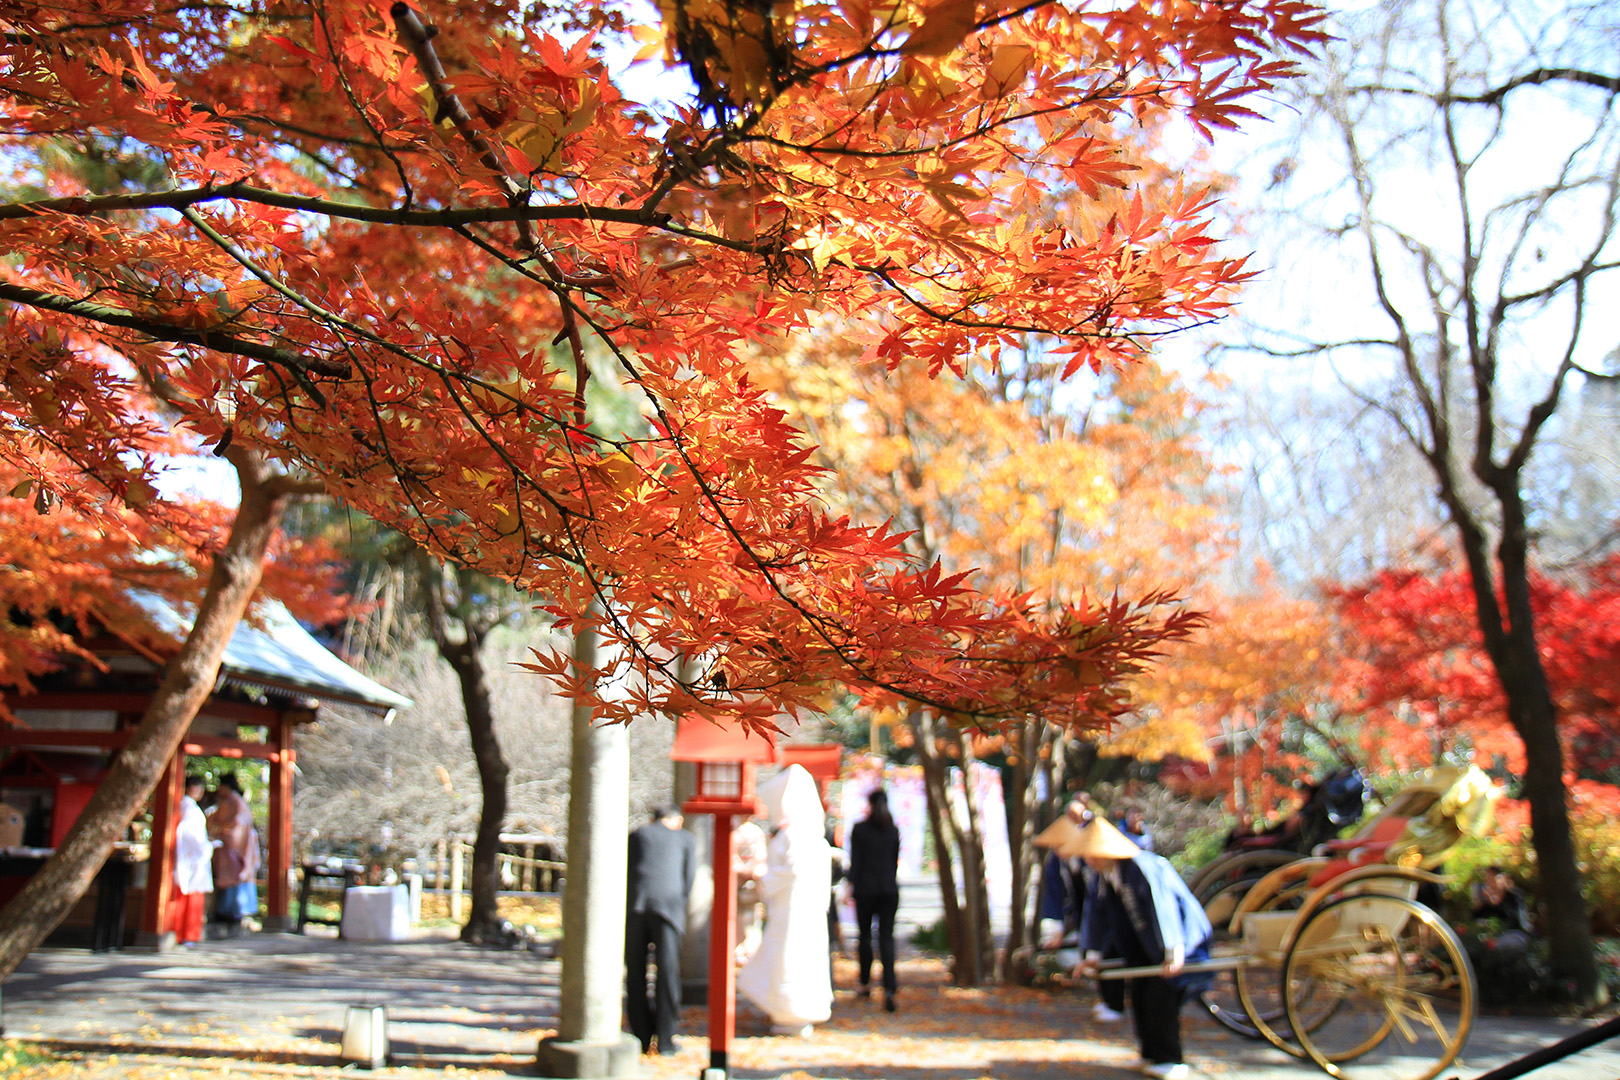 もうすぐ秋がやってきますね 秋と言ったら紅葉 秋には素敵な紅葉をバックにロケーションフォトはいかがでしょうか 宮の森迎賓館ウエディングblog